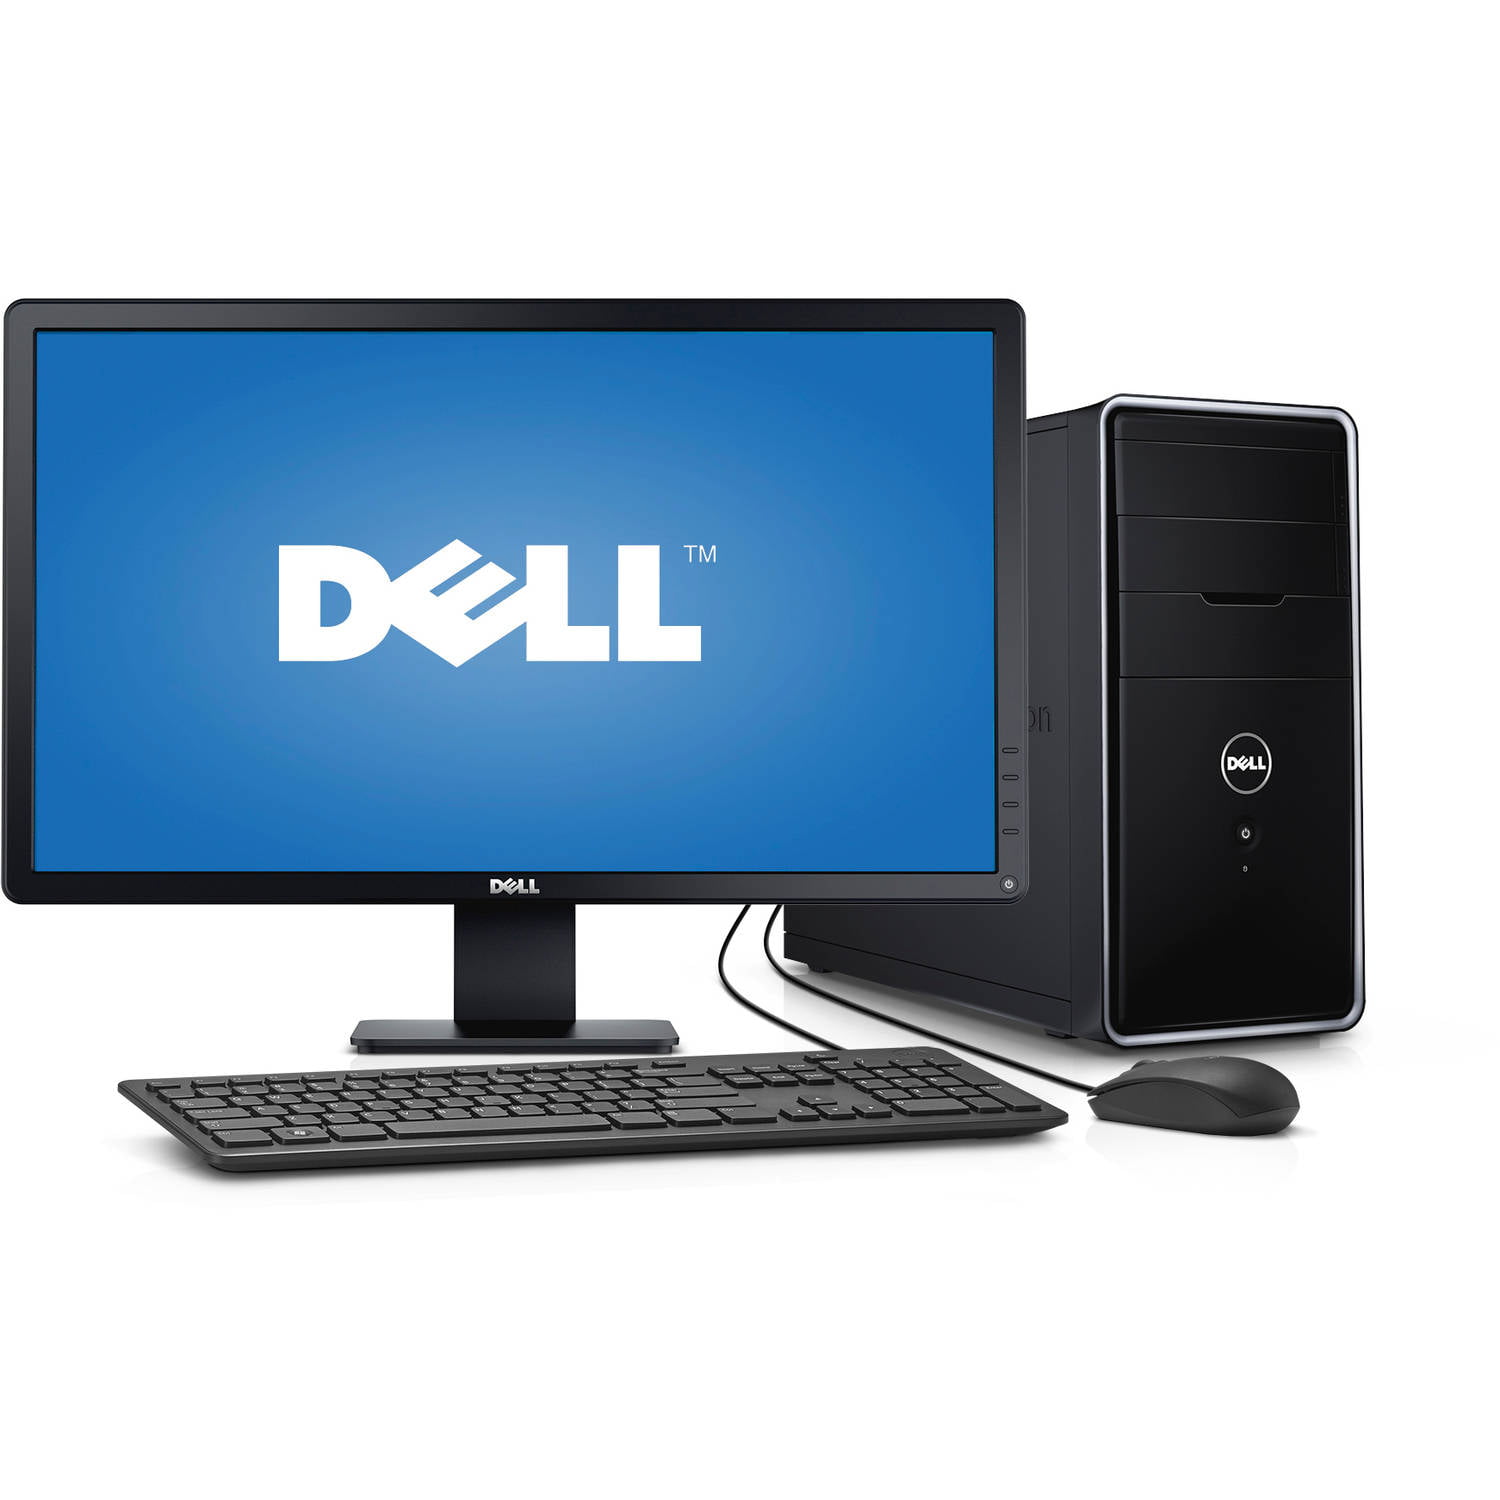 Refurbished Dell Inspiron 3847 Desktop PC with Intel Core i5-4460 Processor, 8GB Memory, 24